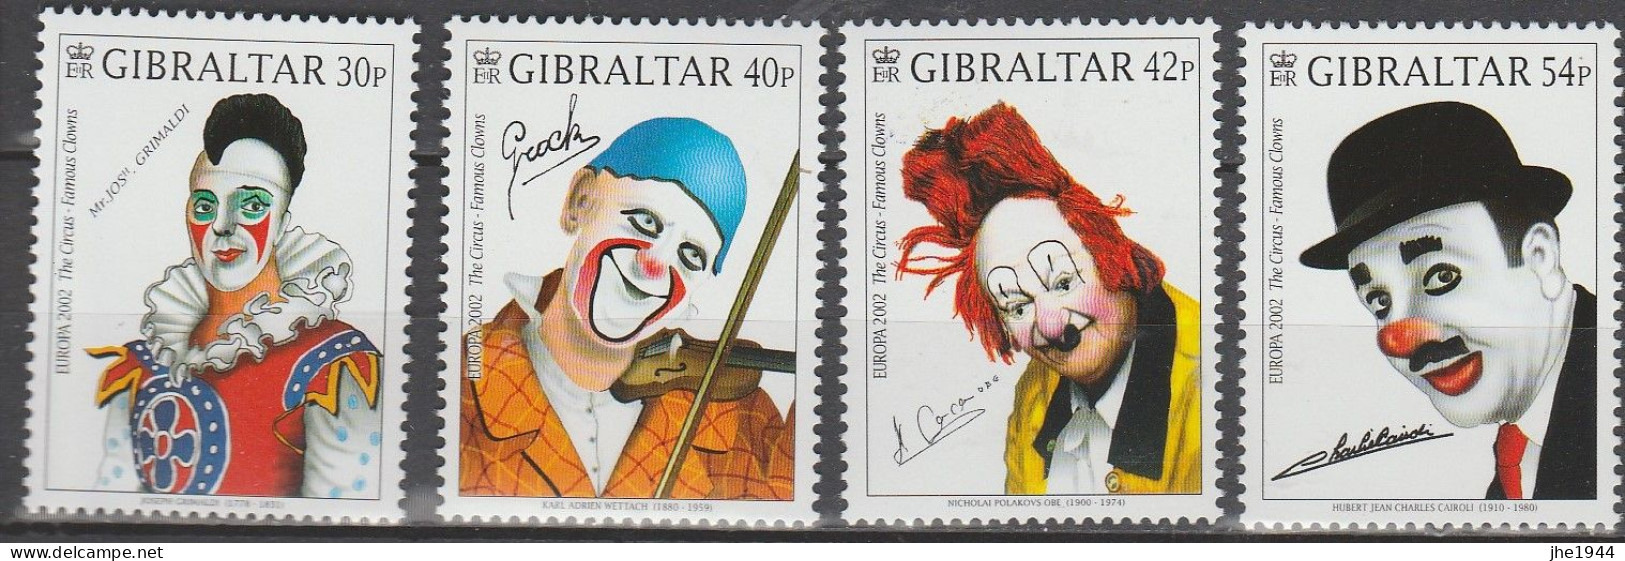 Europa 2002 Le Cirque Voir liste des timbres à vendre **